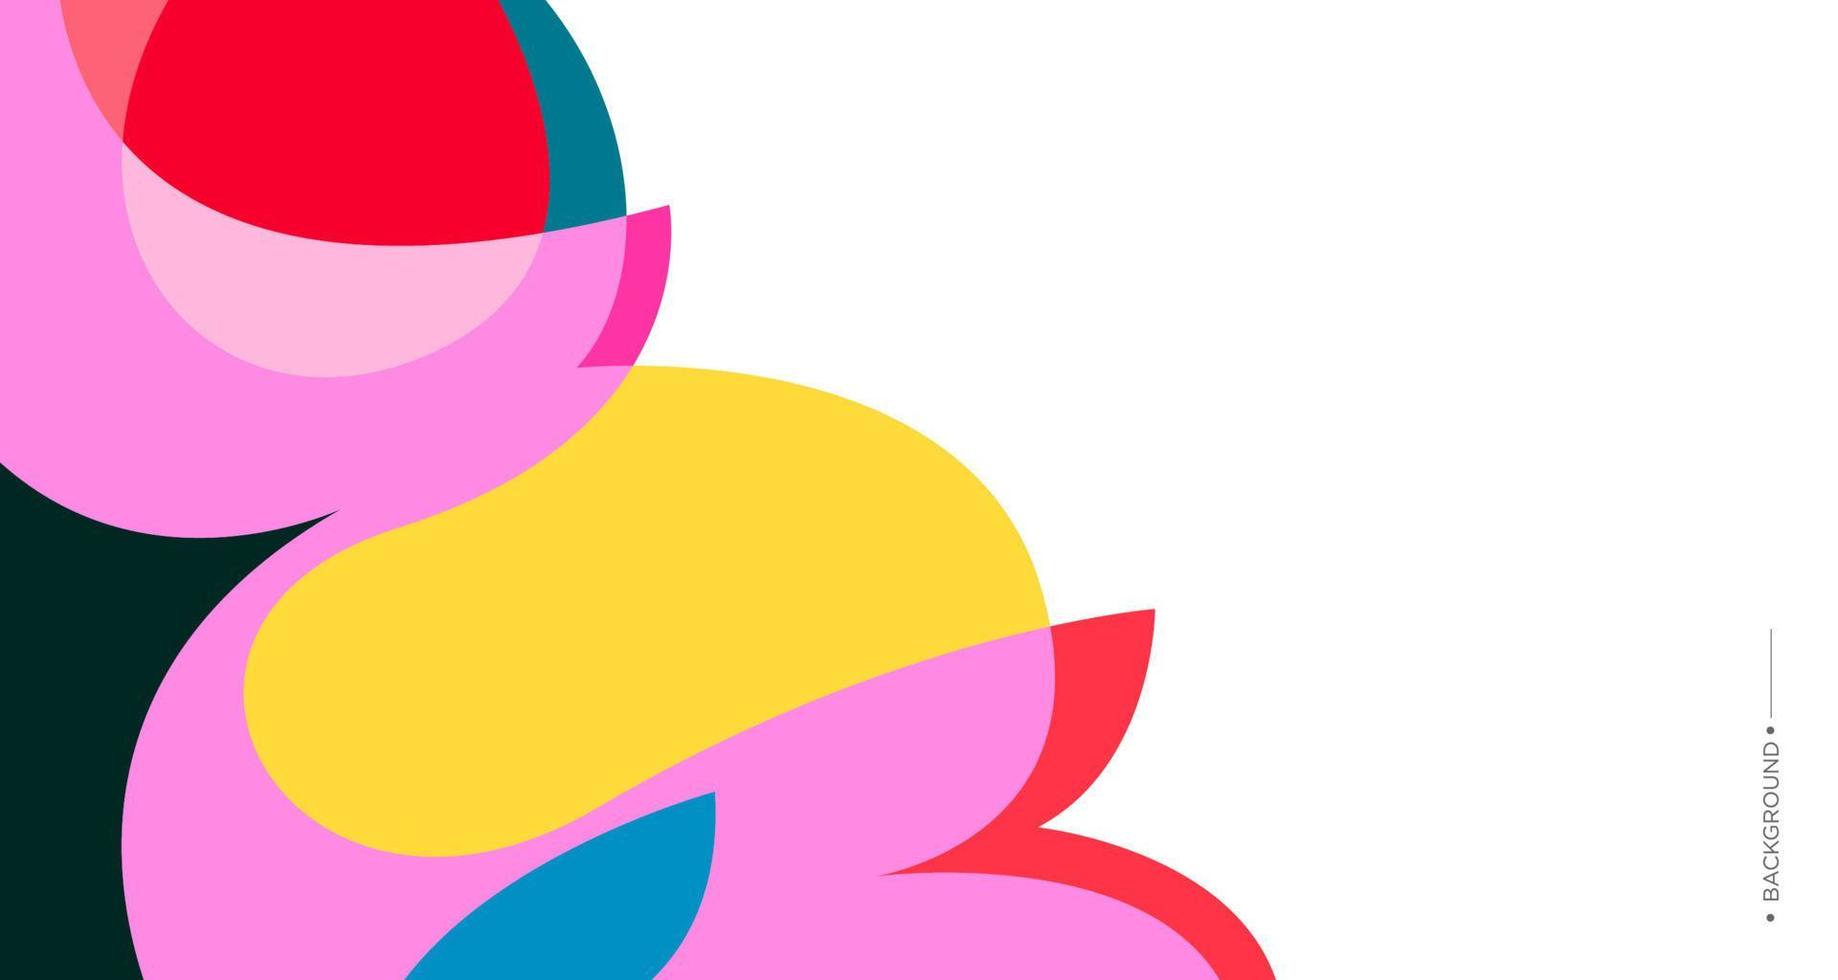 kleurrijke abstracte vloeibare en vloeibare achtergrond voor banner vector